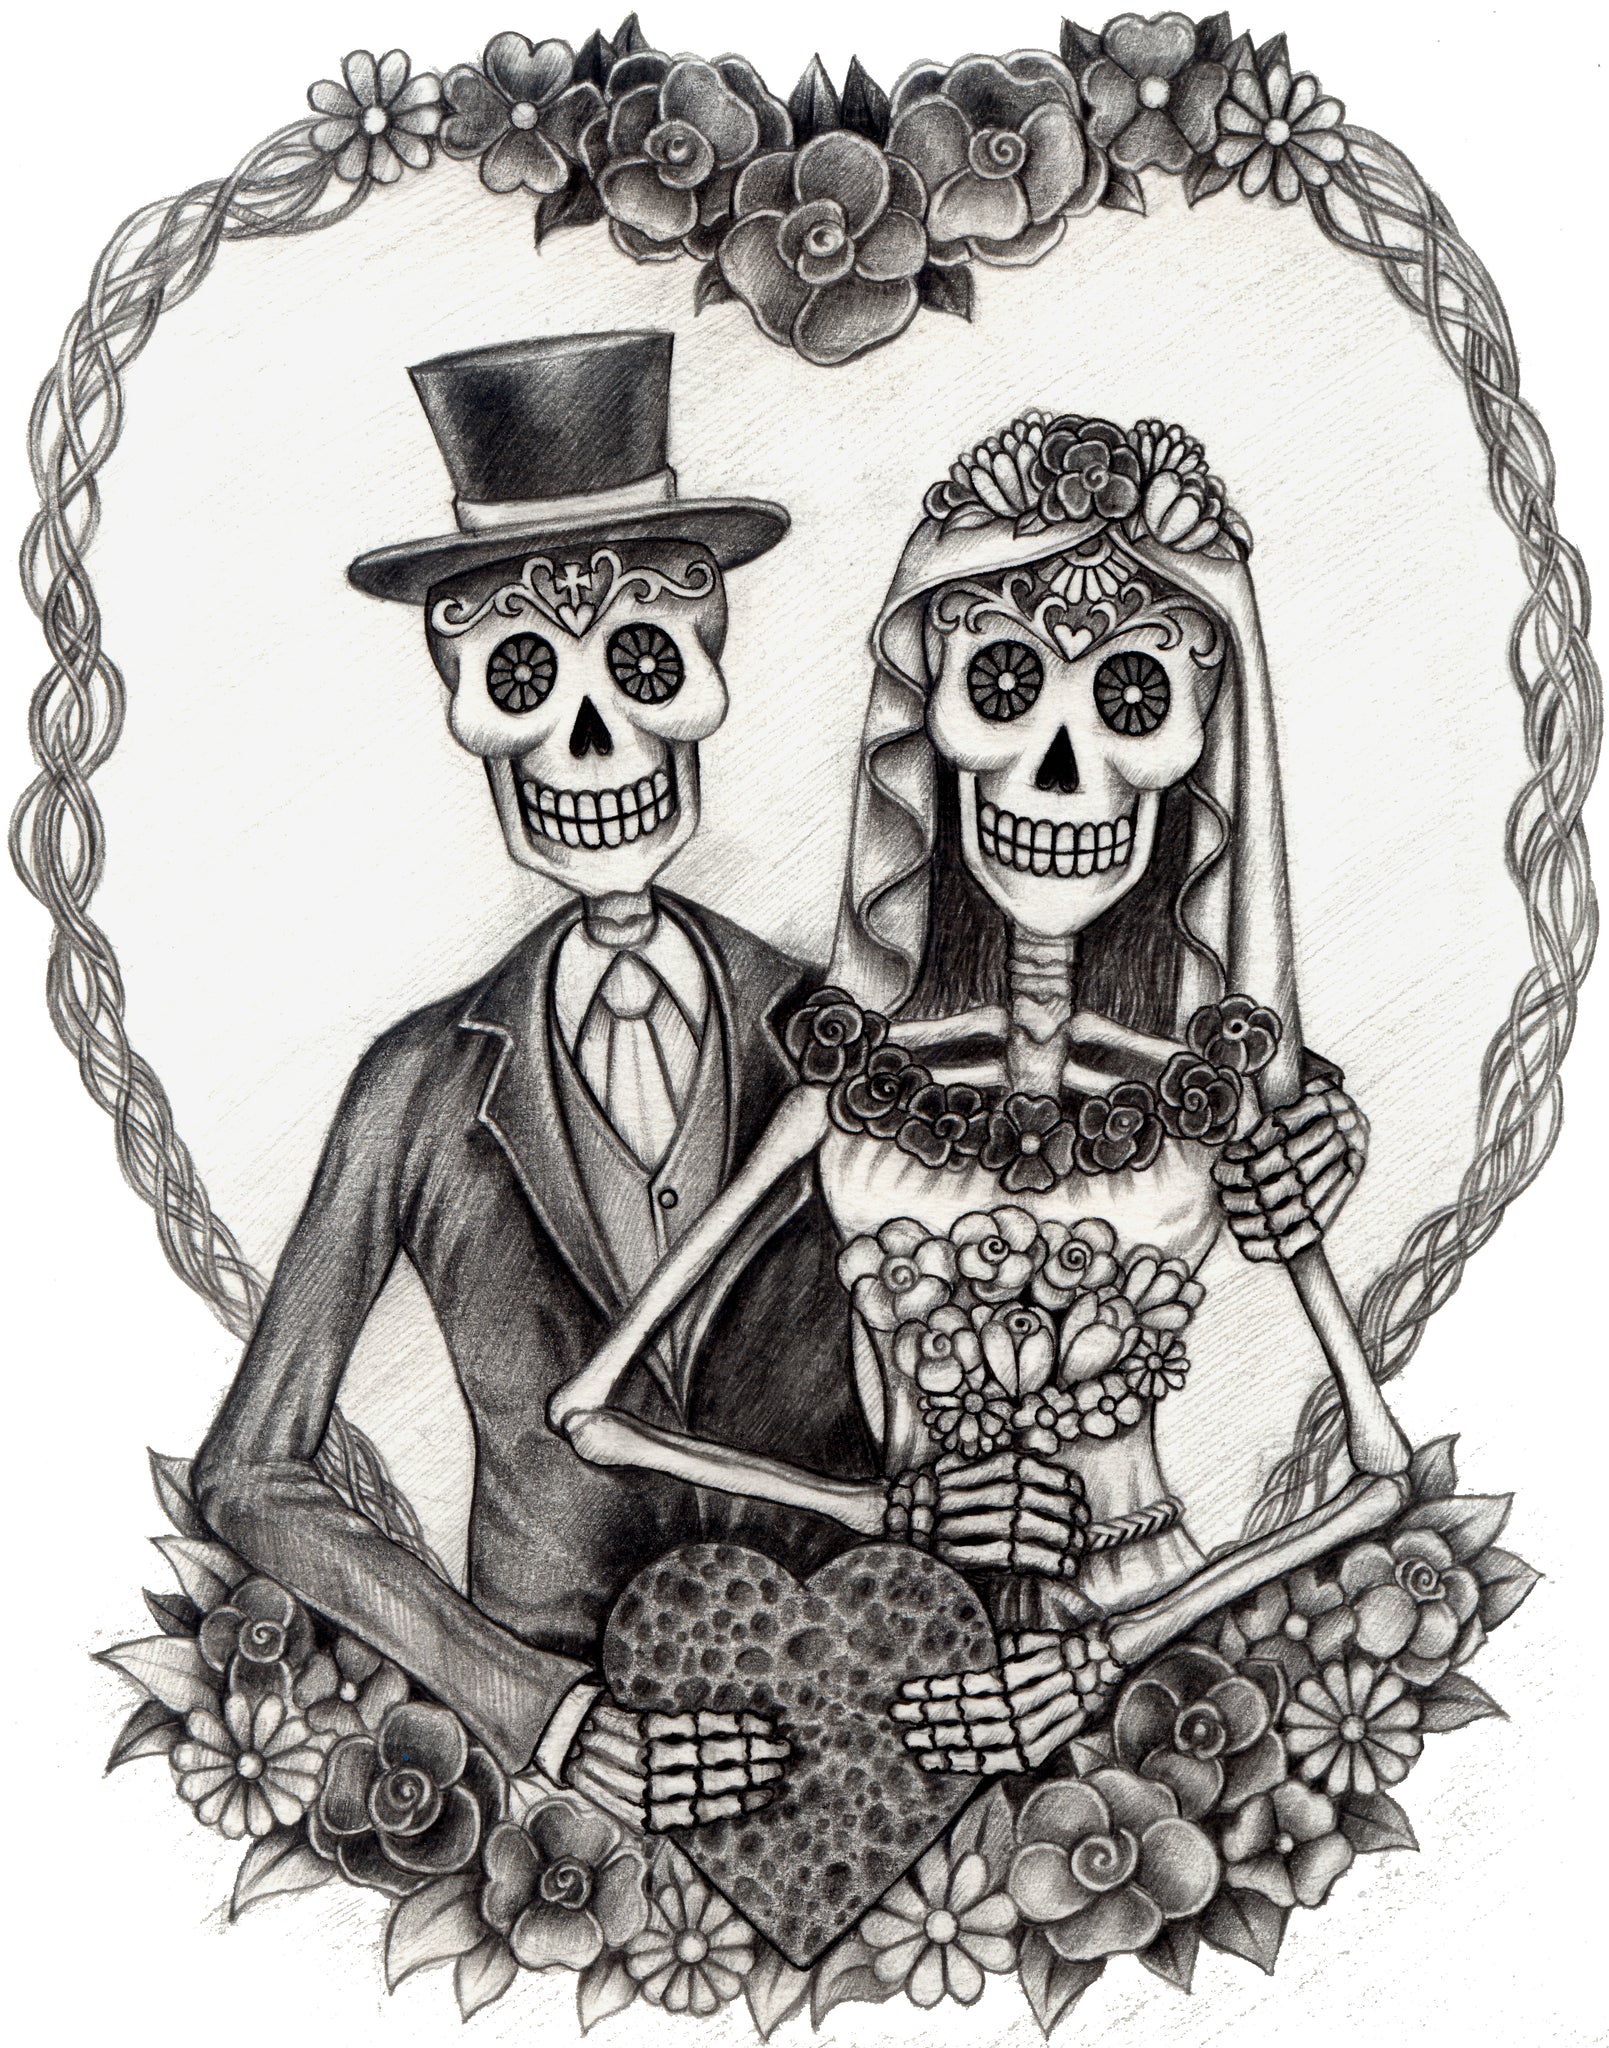 Pencil Sketch Dia De Los Muertos Bride and Groom Couple with Flowers Vinyl Decal Sticker